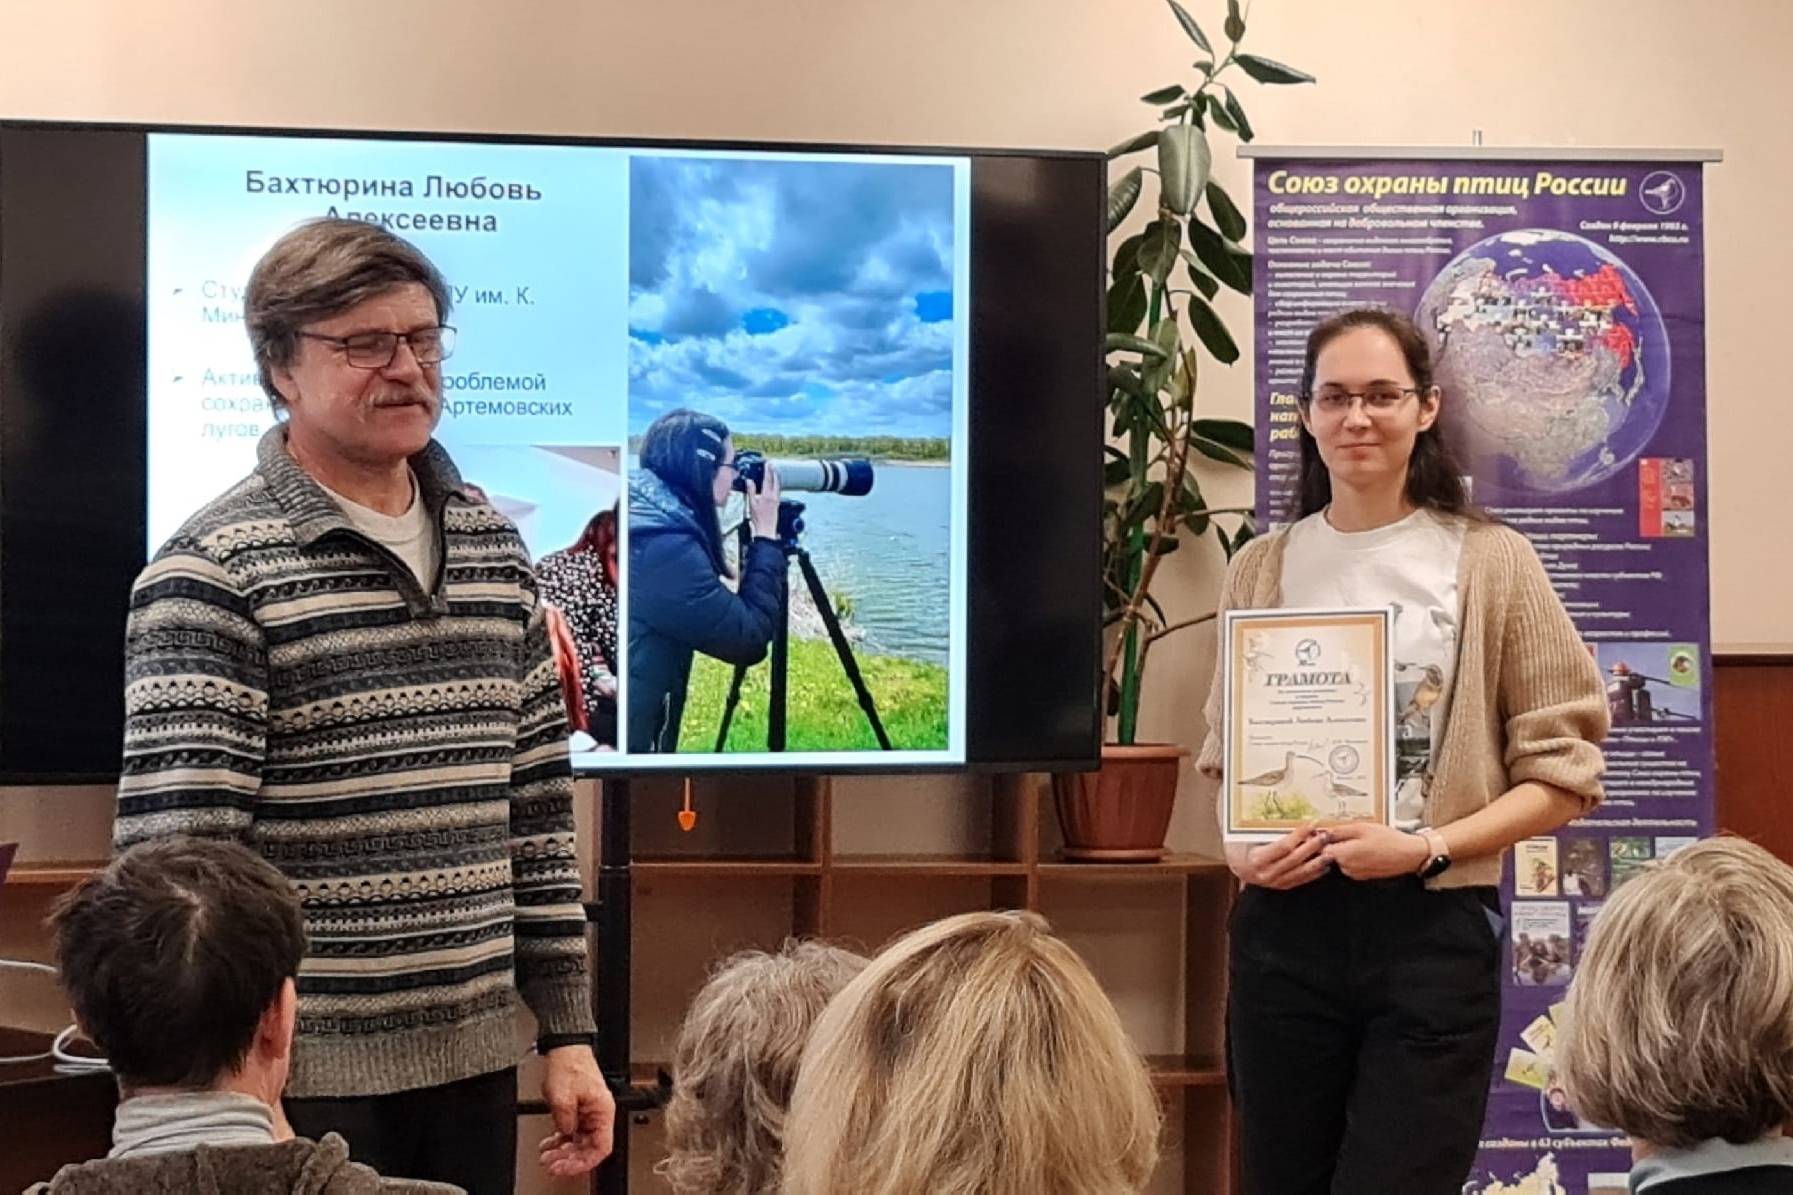 Почётными грамотами наградил Союз охраны птиц России преподавателей и студентов Мининского университета